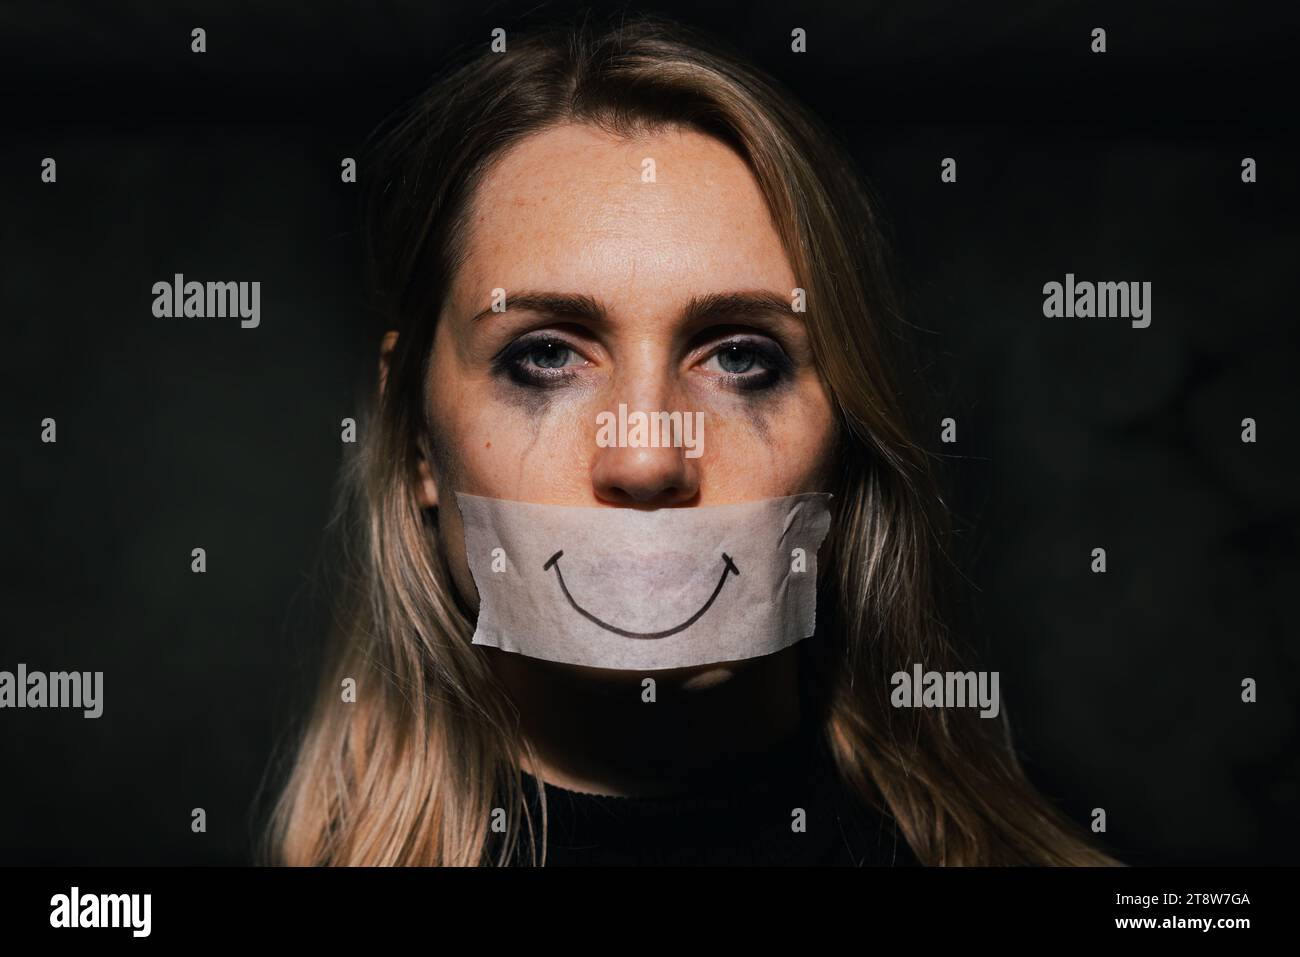 Missbrauch und häusliche Gewalt. Traurige depressive Frau versteckt ihren Mund hinter einem gefälschten Lächeln auf Papierband. Depression und psychische Gesundheit Stockfoto